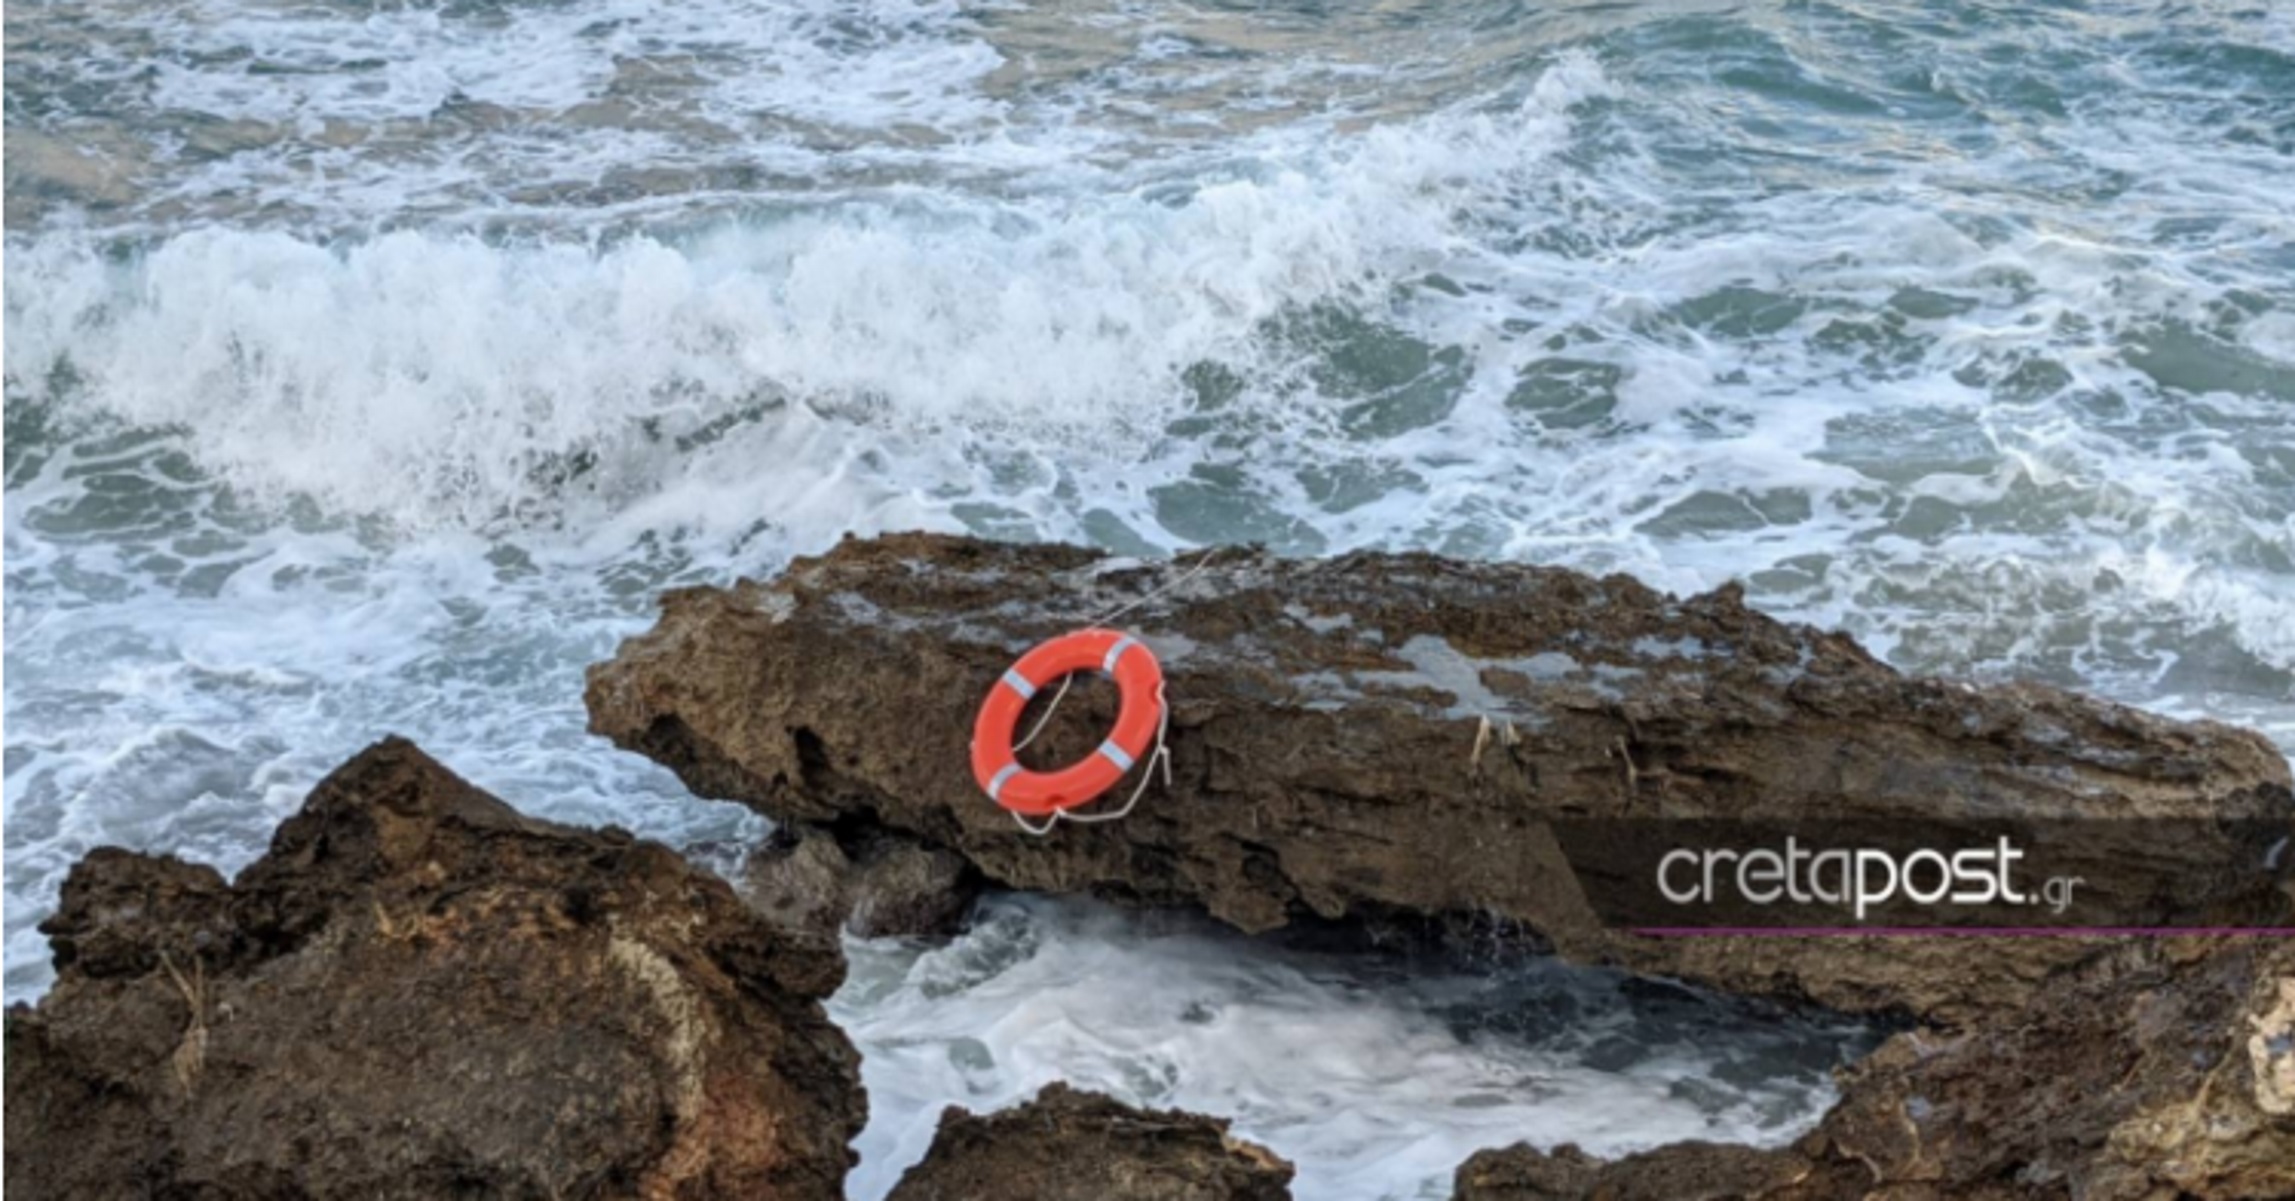 Τραγωδία σε παραλία στην Κρήτη: Εδώ πνίγηκε ο παππούς που κολυμπούσε με τα εγγόνια